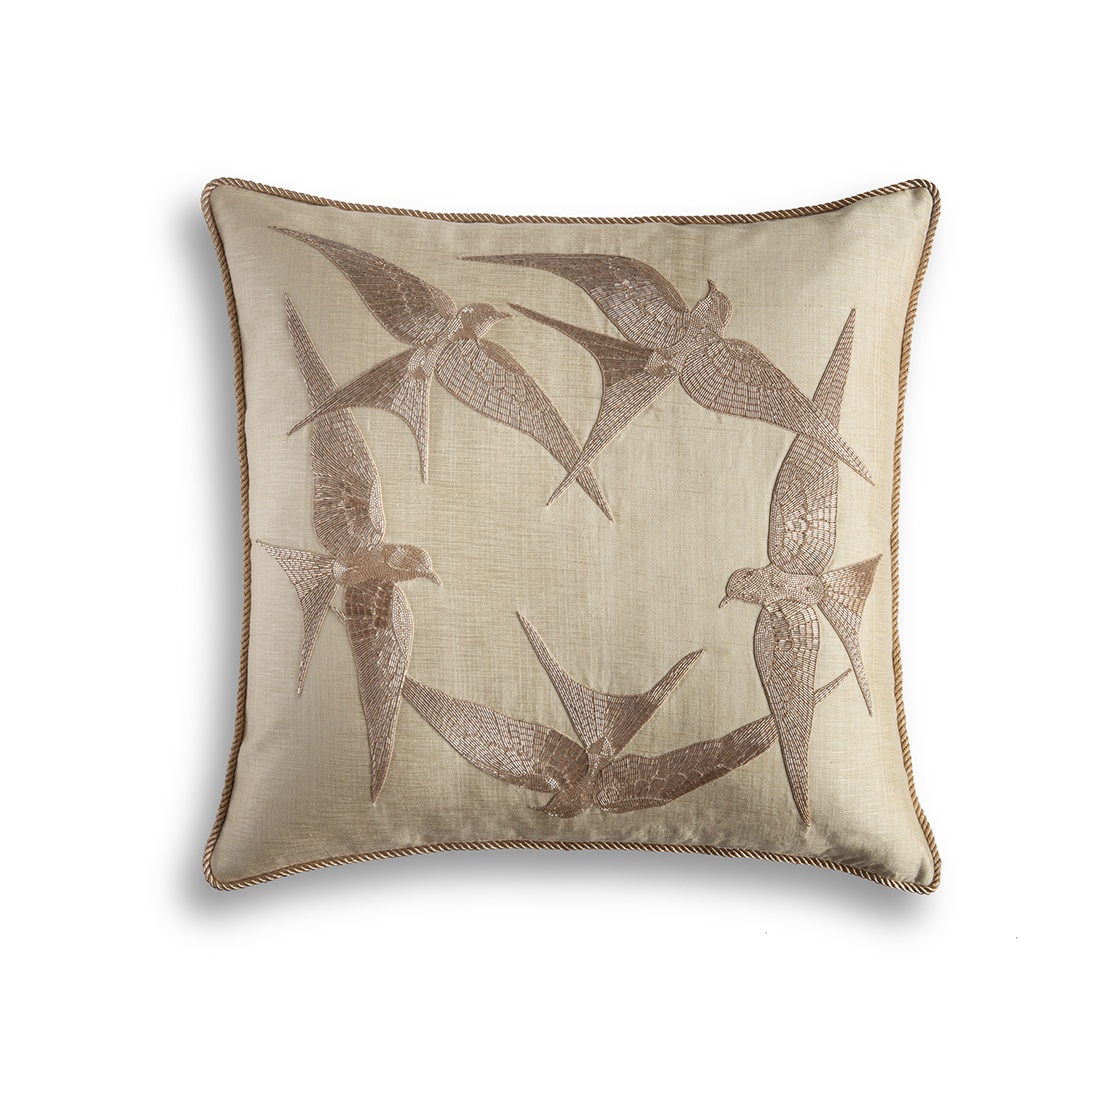 Elvira cushion in Lagan silk - Light gold - Beaumont & Fletcher